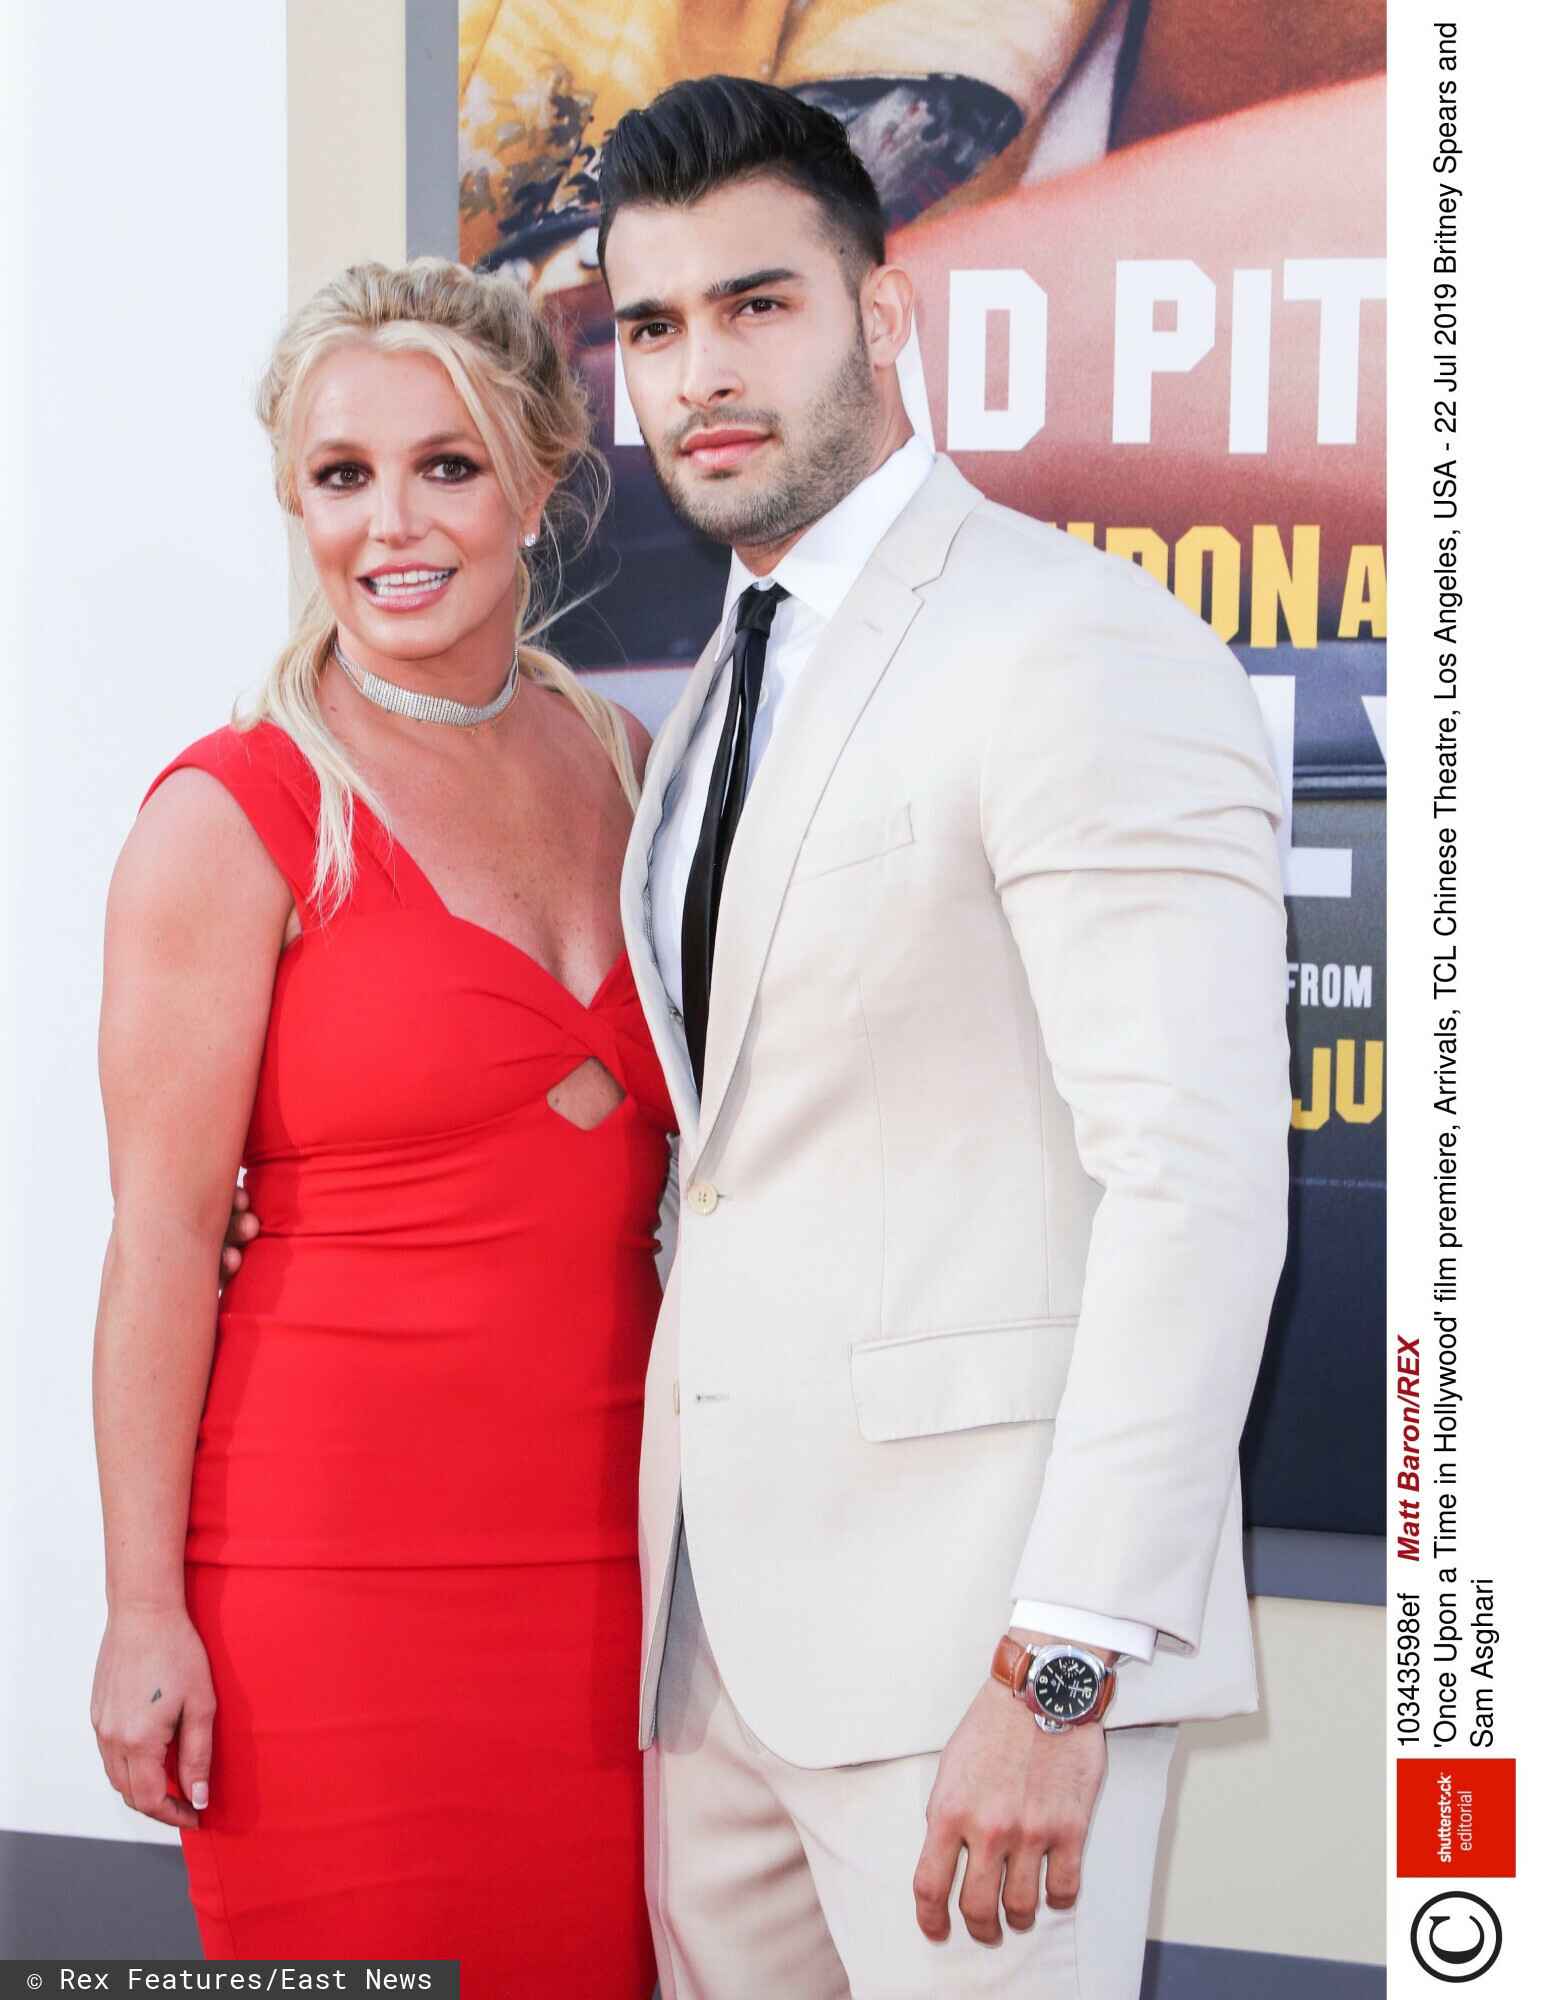 Britney Spears, załamanie nerwowe, rozwód z mężem, afera w hotelu, zdjęcia